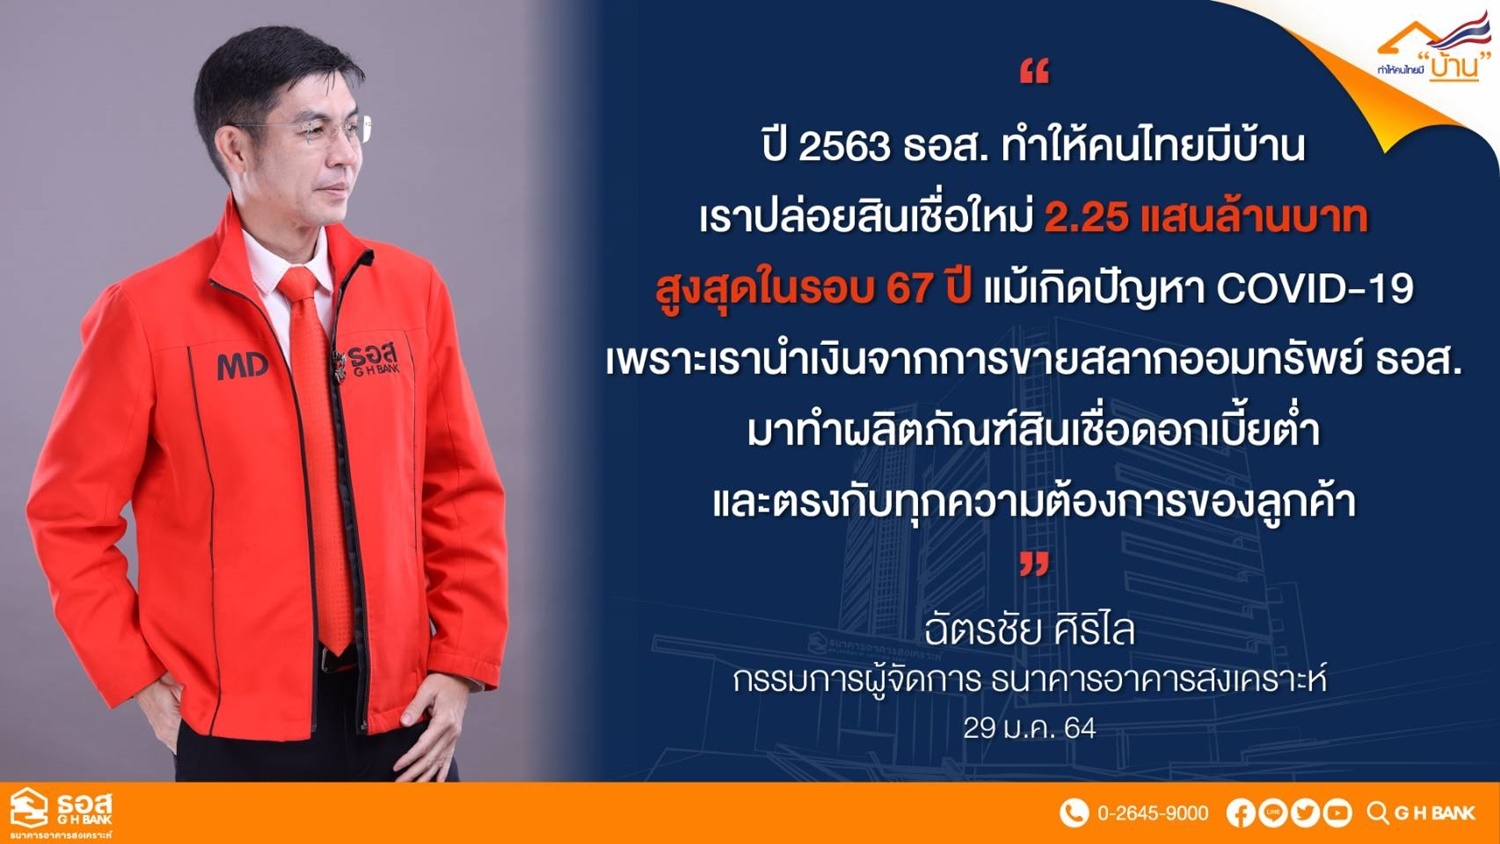 ธอส.ทำคนไทยมีบ้านปล่อยกู้63ถึง2.2แสนล้านบาท